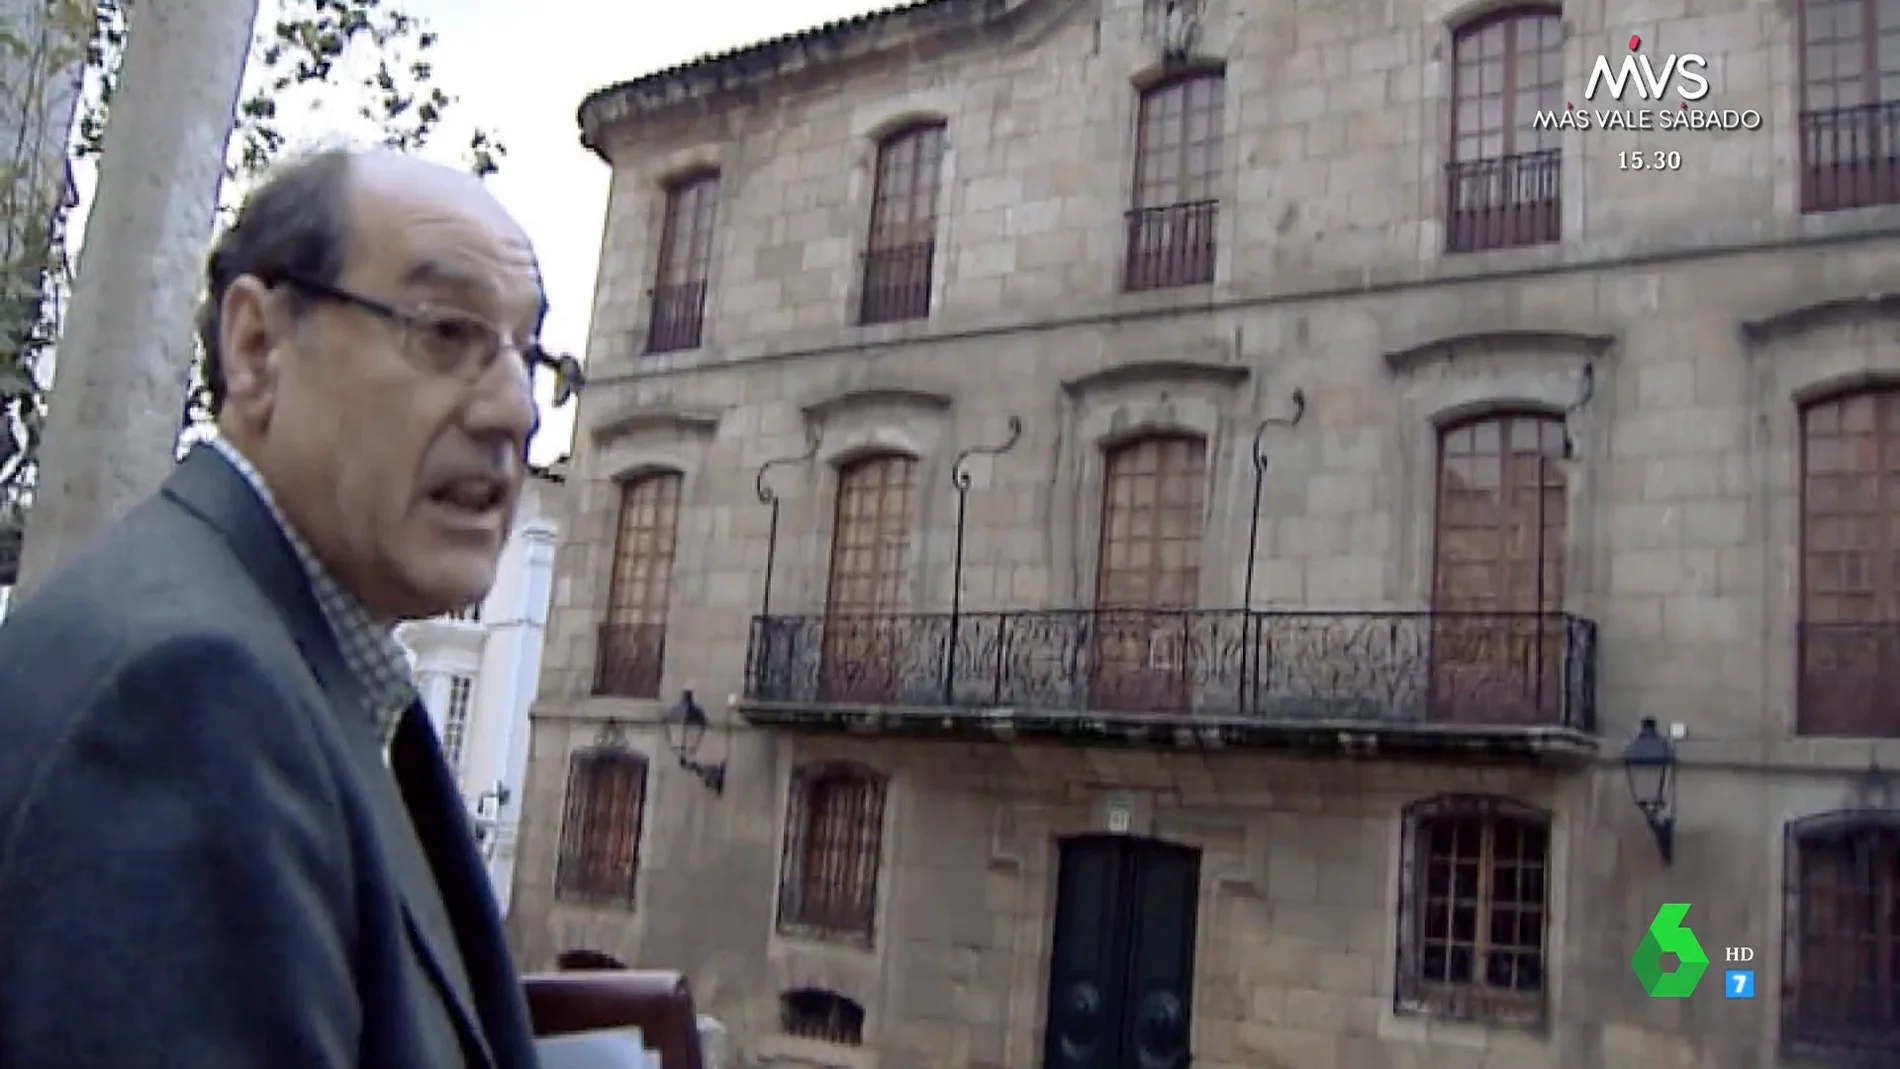 La Casa Cornide, el palacio de la familia Franco adquirido por 300.000 pesetas en una subasta "amañada"